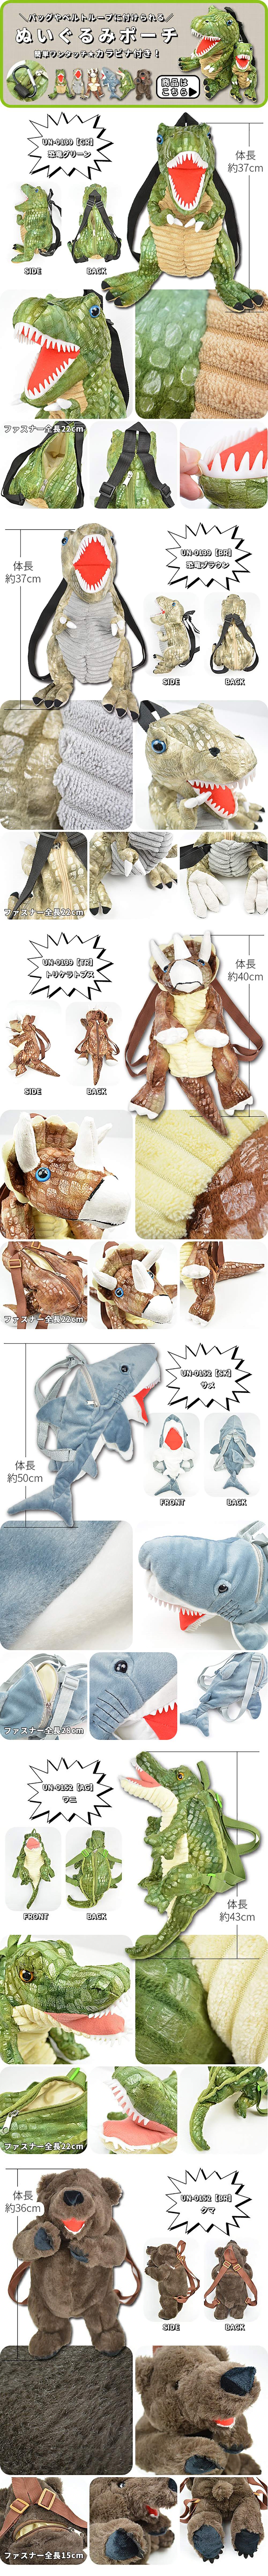 Dinosaur Plush Doll Backpack (Dinosaur, Bear &Shark) - detail